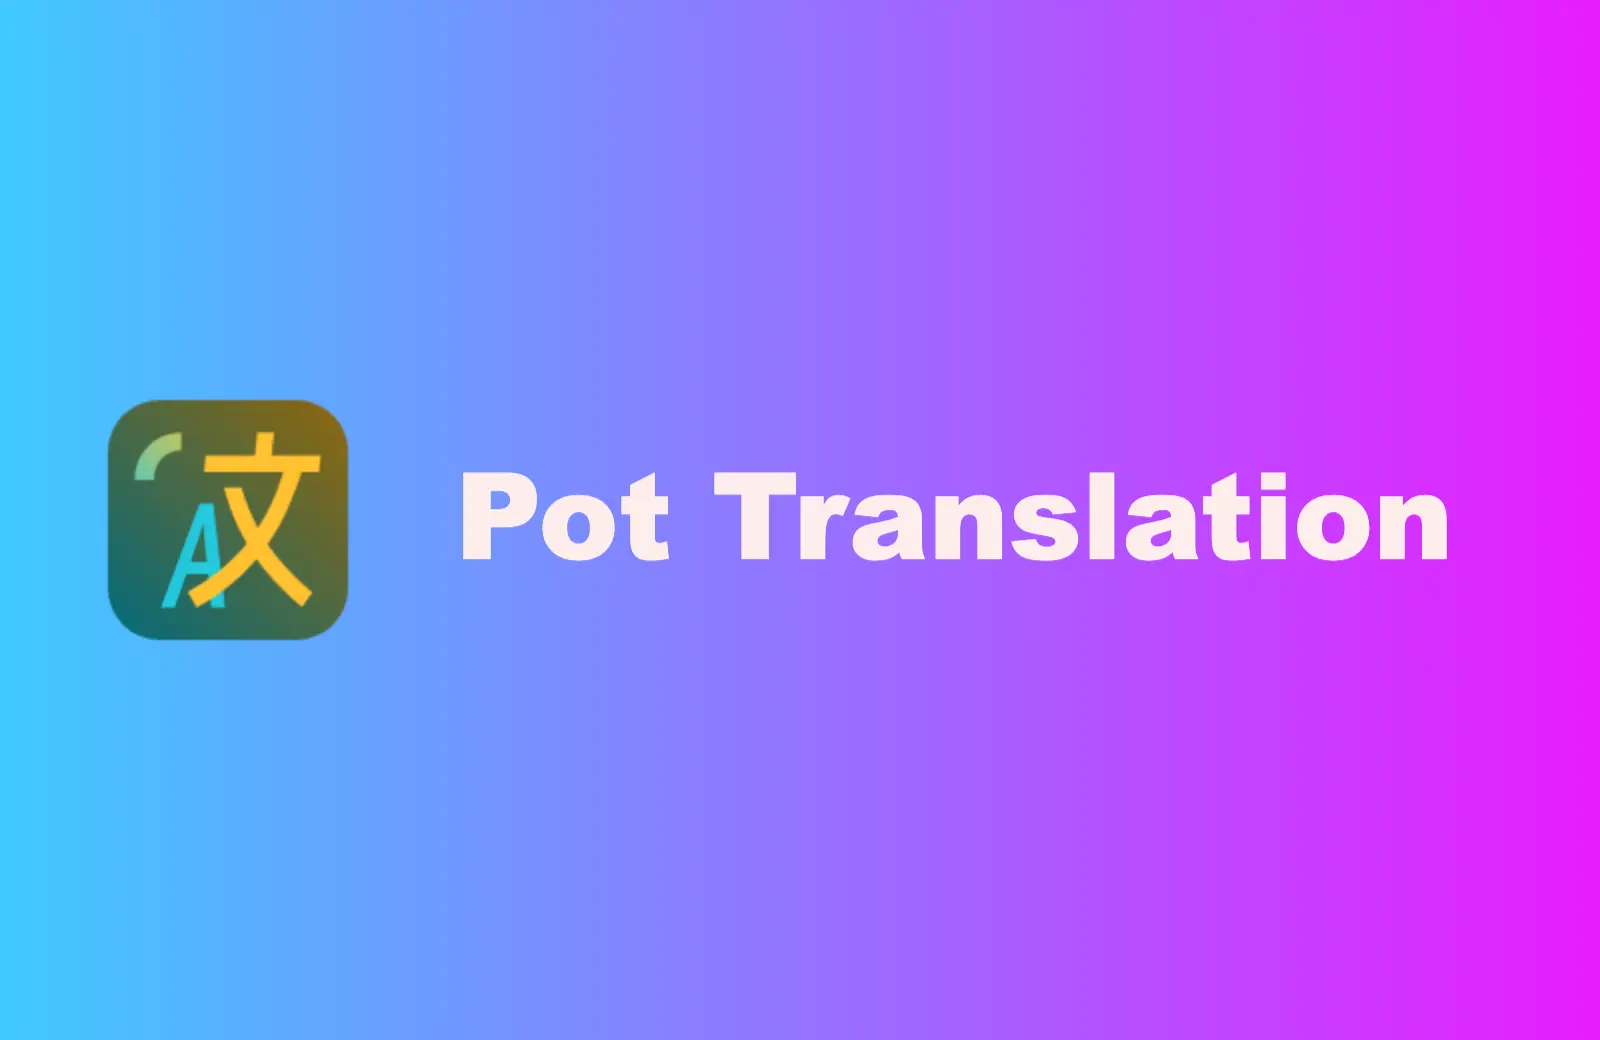 Translation tools